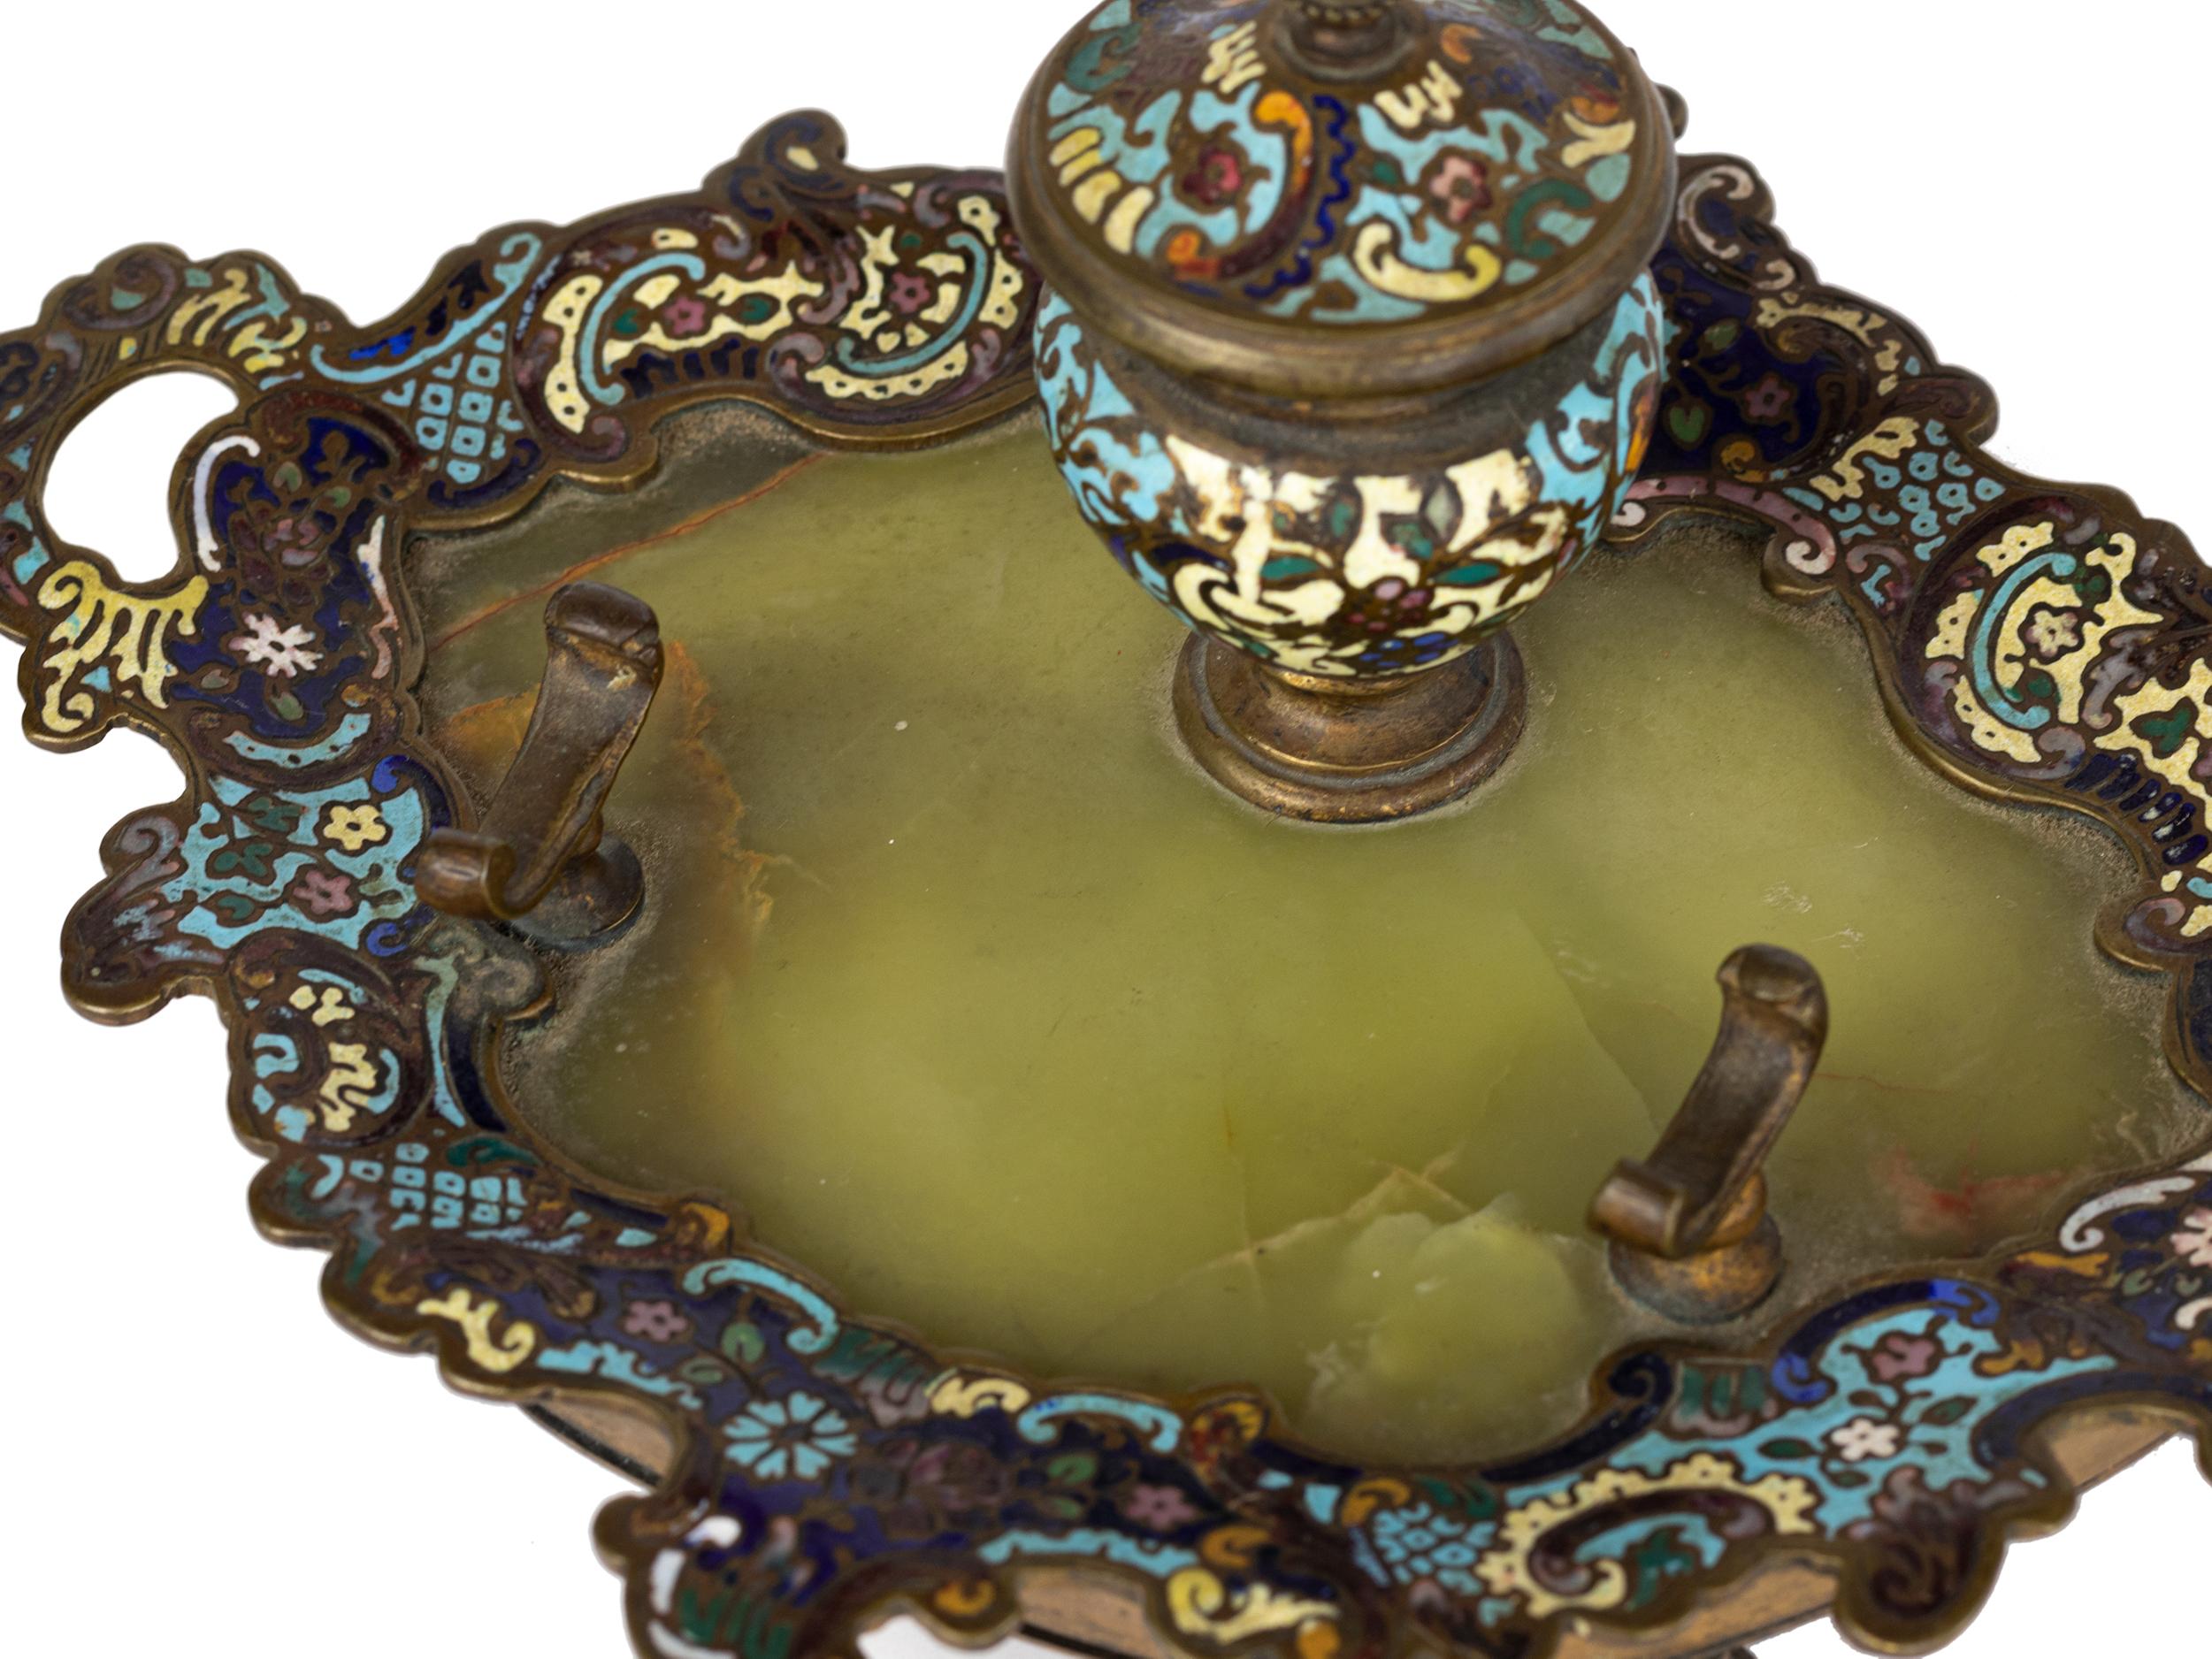 Ein 19. Jahrhundert Französisch champlevé emaillierte vergoldete Bronze verziert mit bunten blau, grün, gelb emailliert über die Bronze-Basis in einem Sèvres-Stil Dekor mit einer Federstütze.  

Breite: 8,07 Zoll (20,5 cm)
Tiefe: 17 cm (6,7